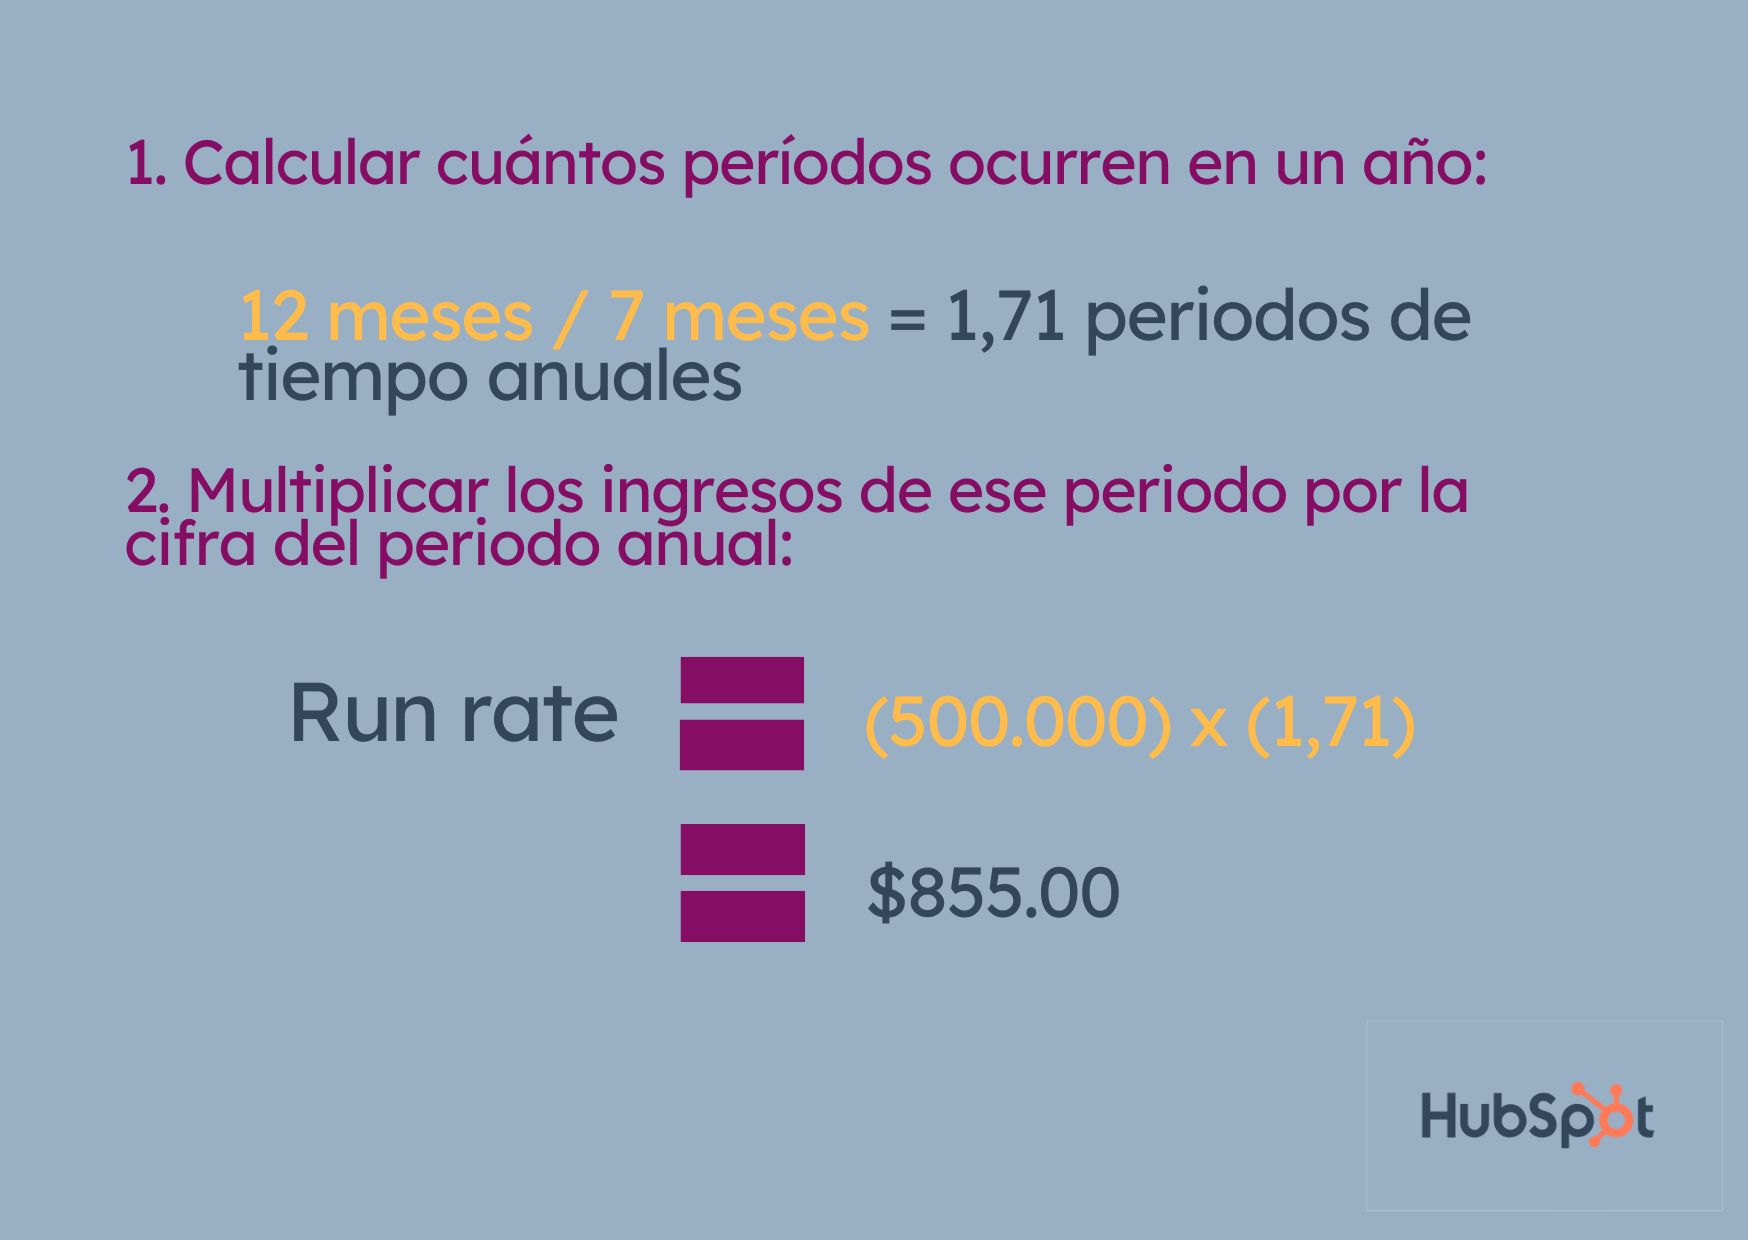 Ejemplo de cómo calcular el run rate